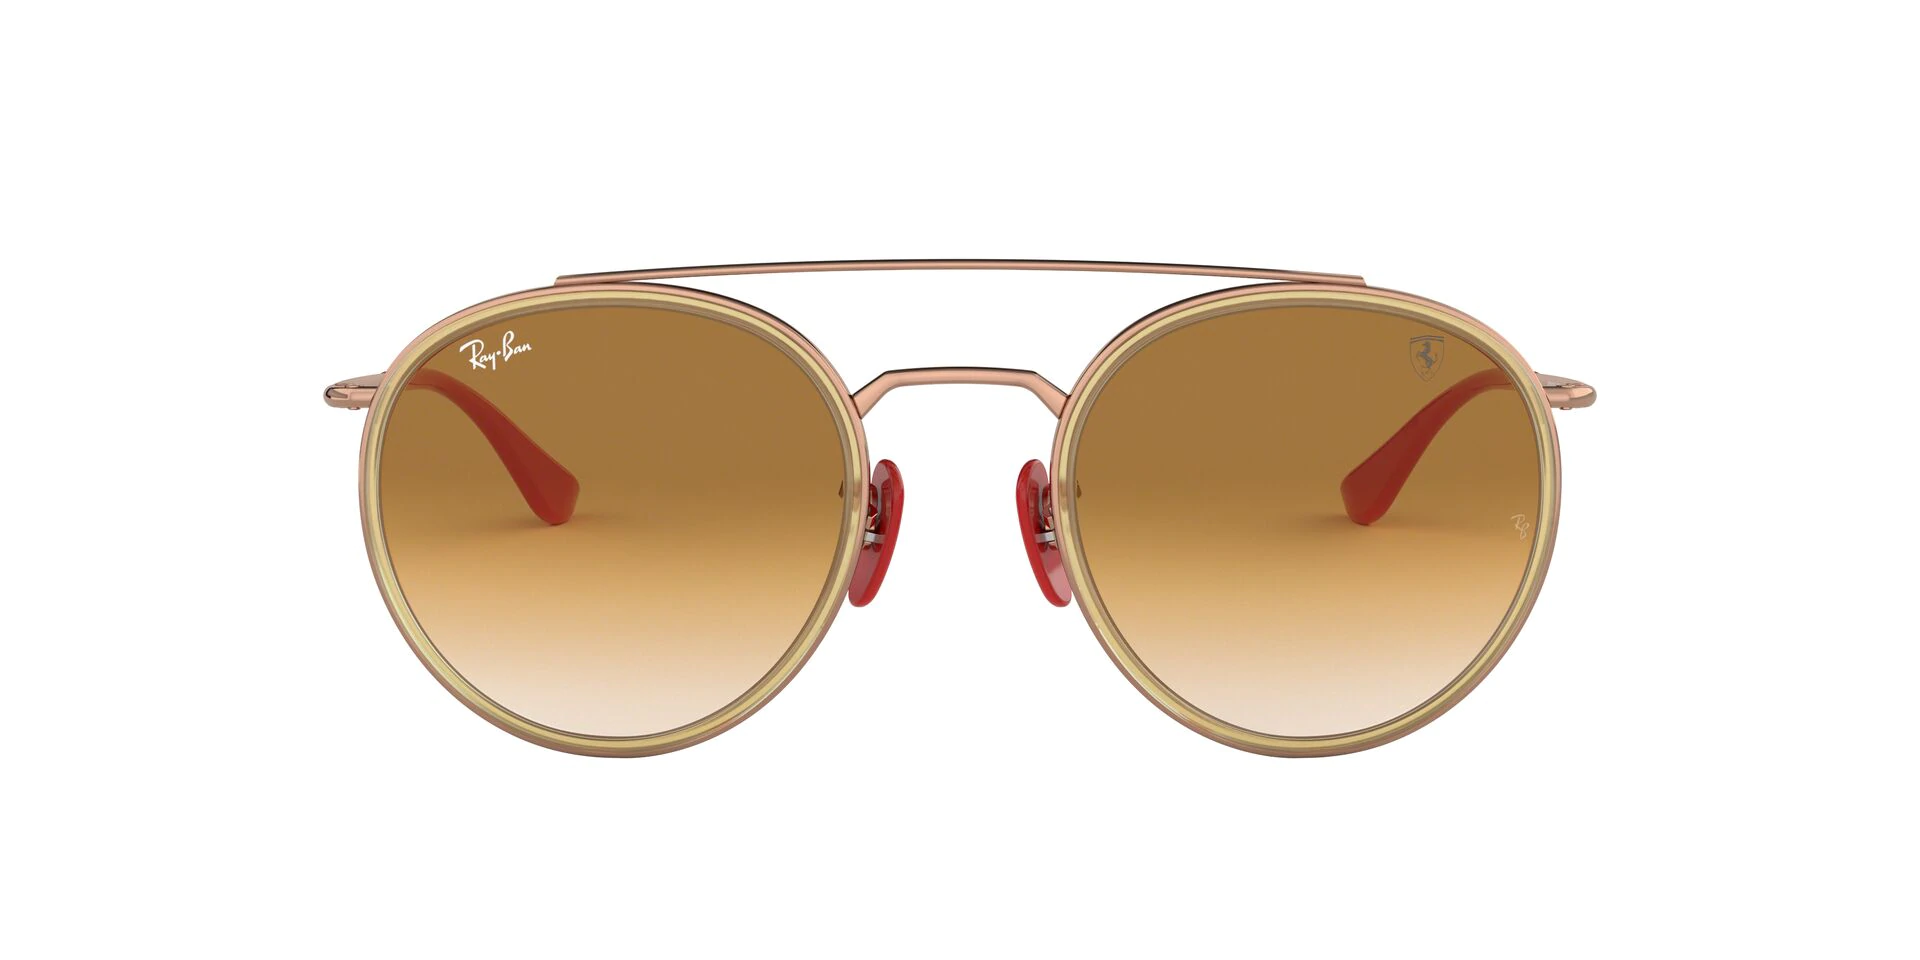 Ray Ban - Scuderia Ferrari Copper:Brown Gradient Round Men Sunglasses